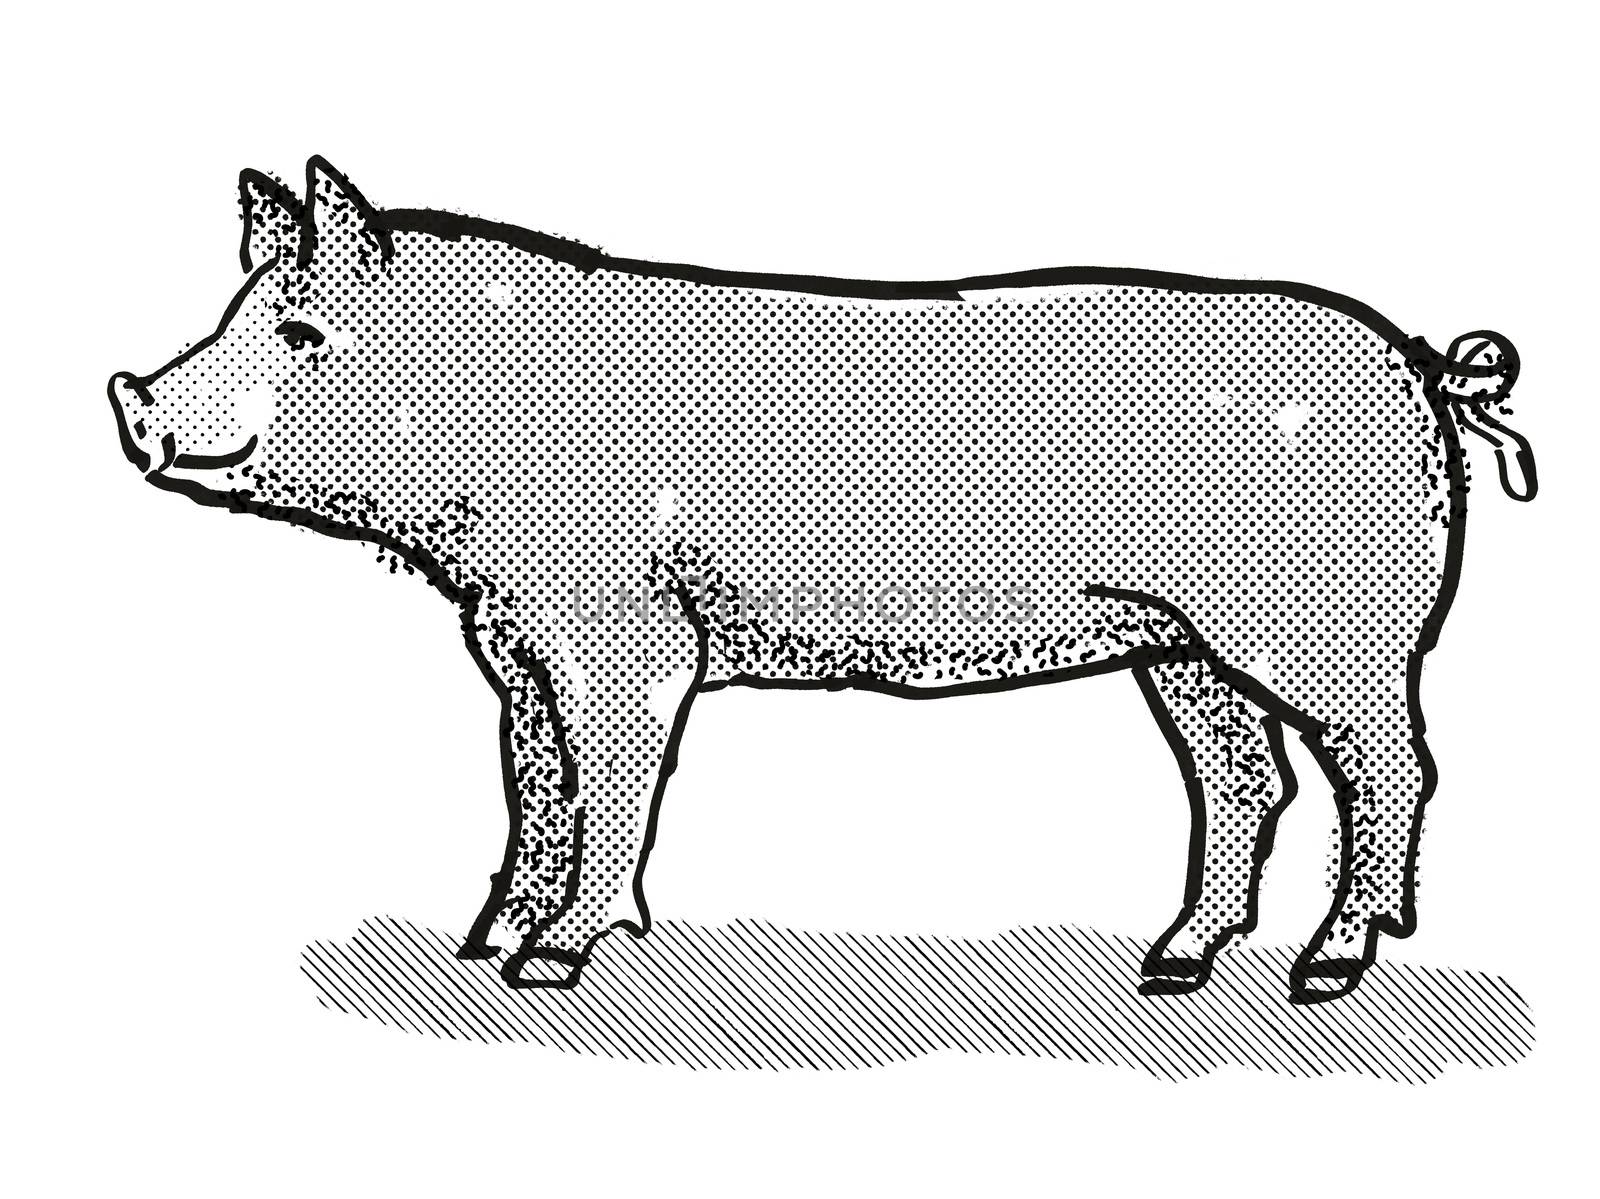 Berkshire Pig Breed Cartoon Retro Drawing by patrimonio